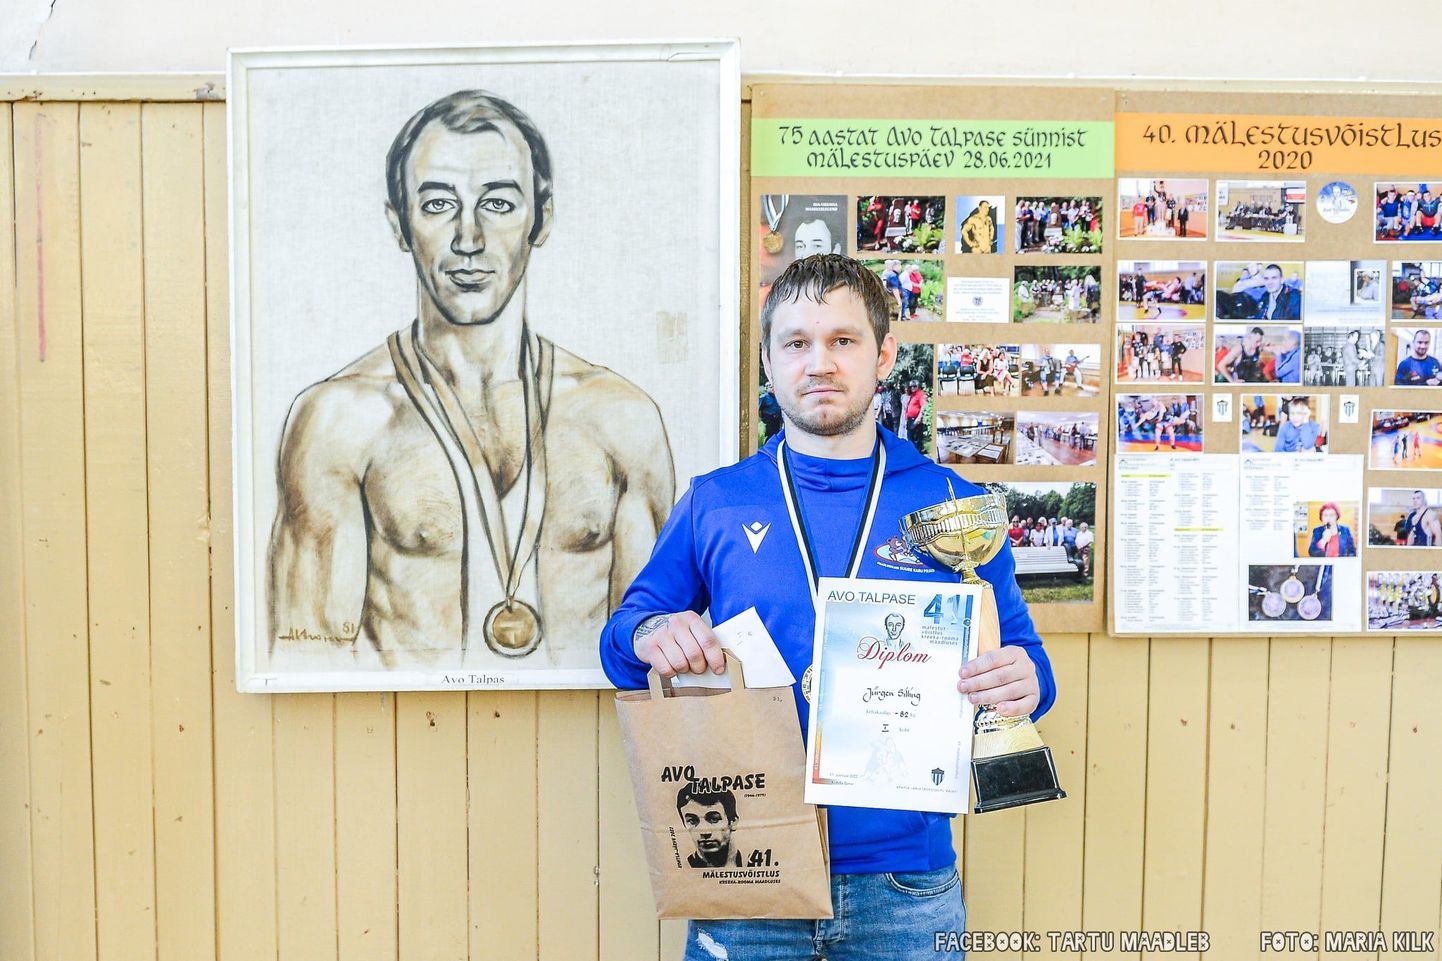 Юрген Силлинг завоевал главную награду турнира, победив в той же весовой категории, в которой больших достижений достиг в свое время и Аво Талпас.